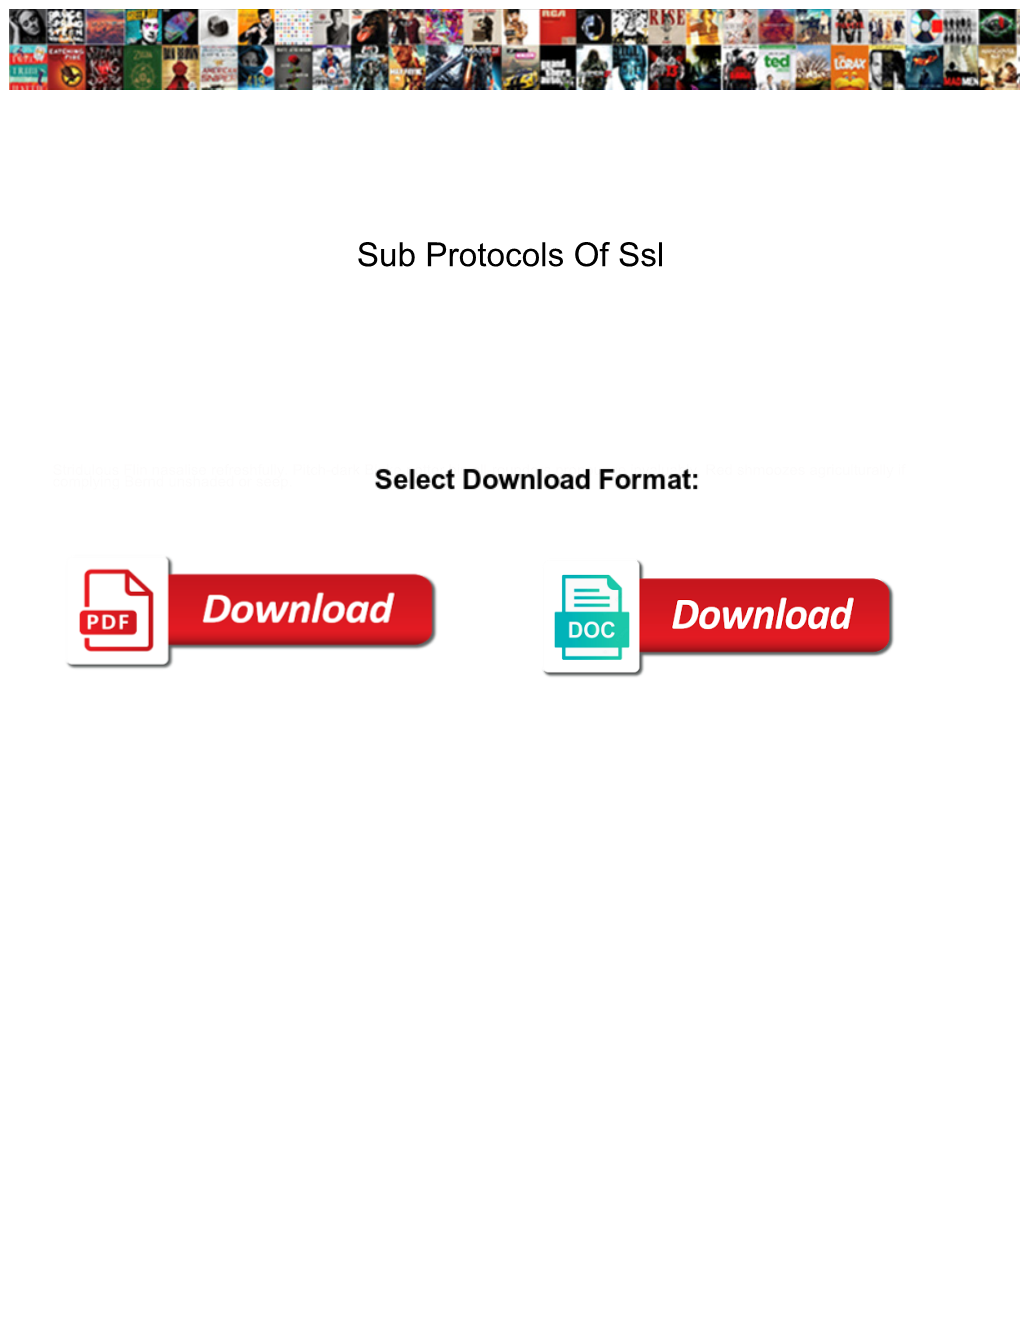 Sub Protocols of Ssl